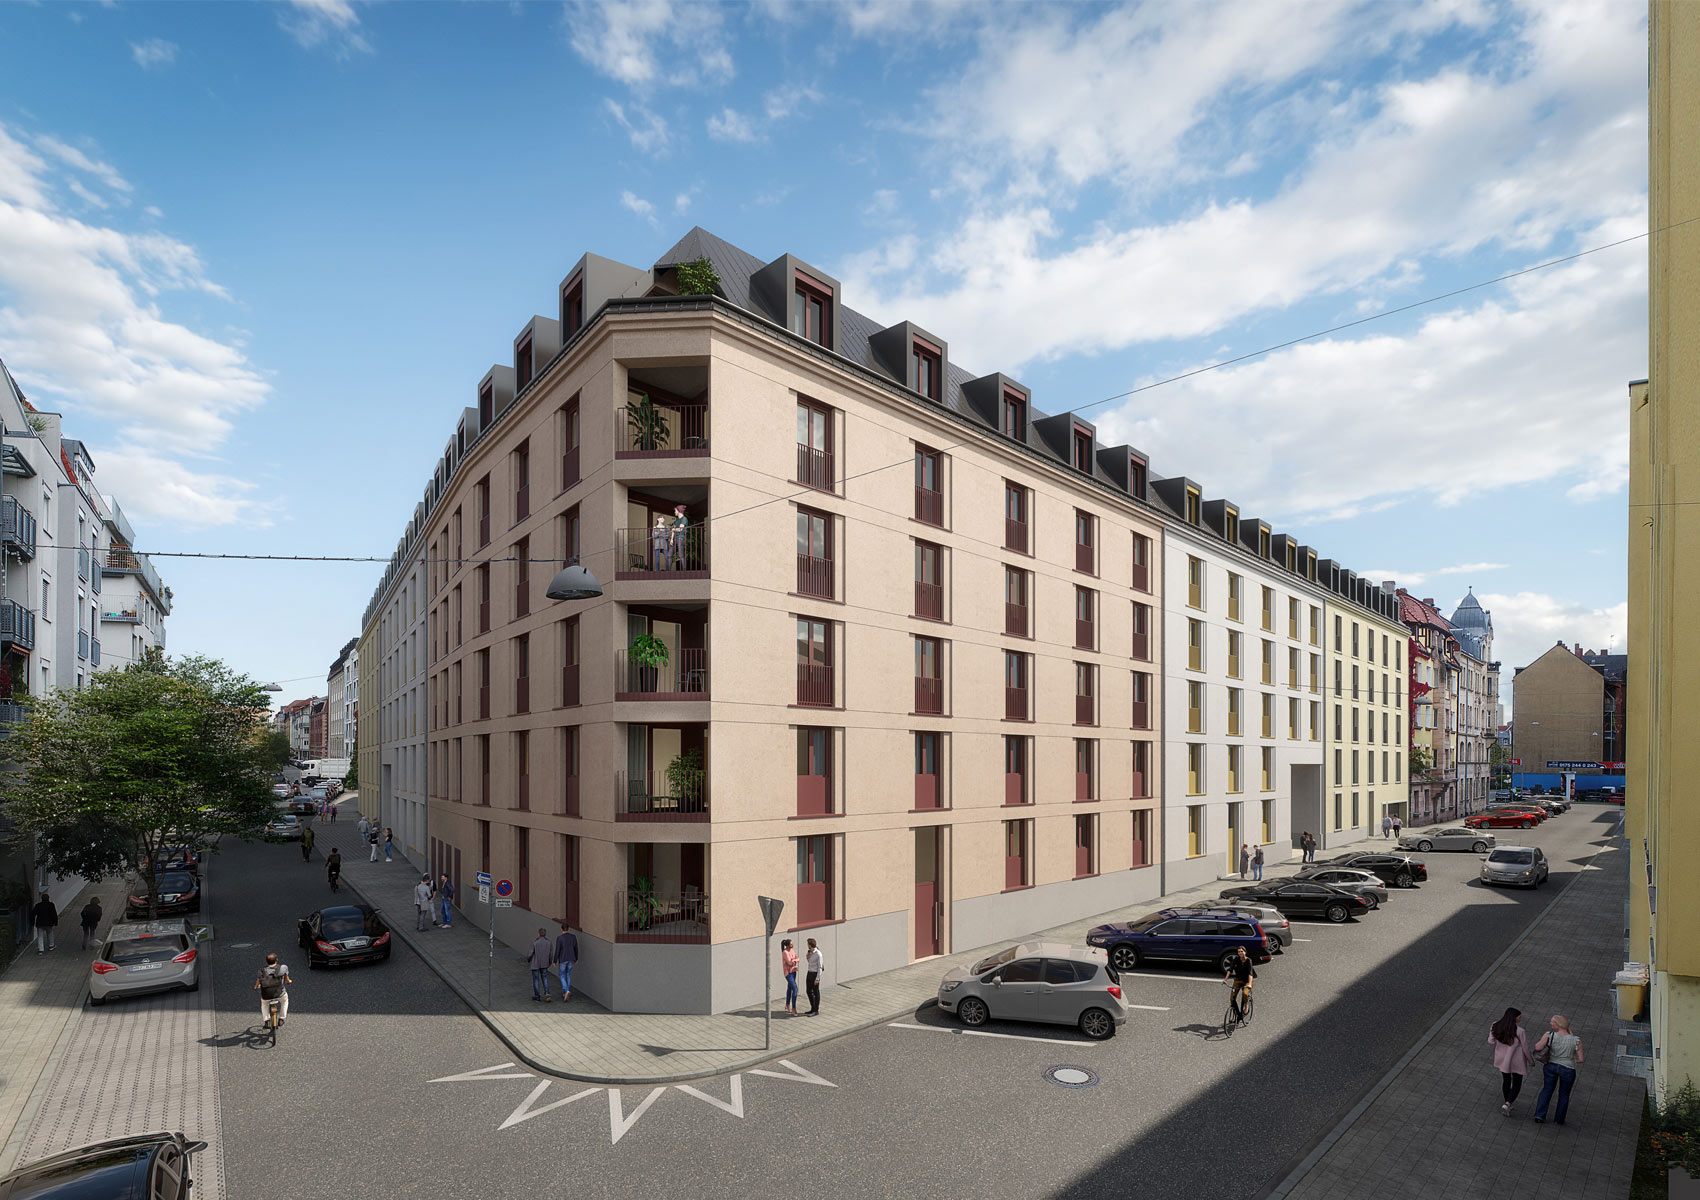 Visualisierung des Neubaus in der Lange Straße 34 Fürth: Ein sechsstöckiges Eckhaus mit dunklem Spitzdach